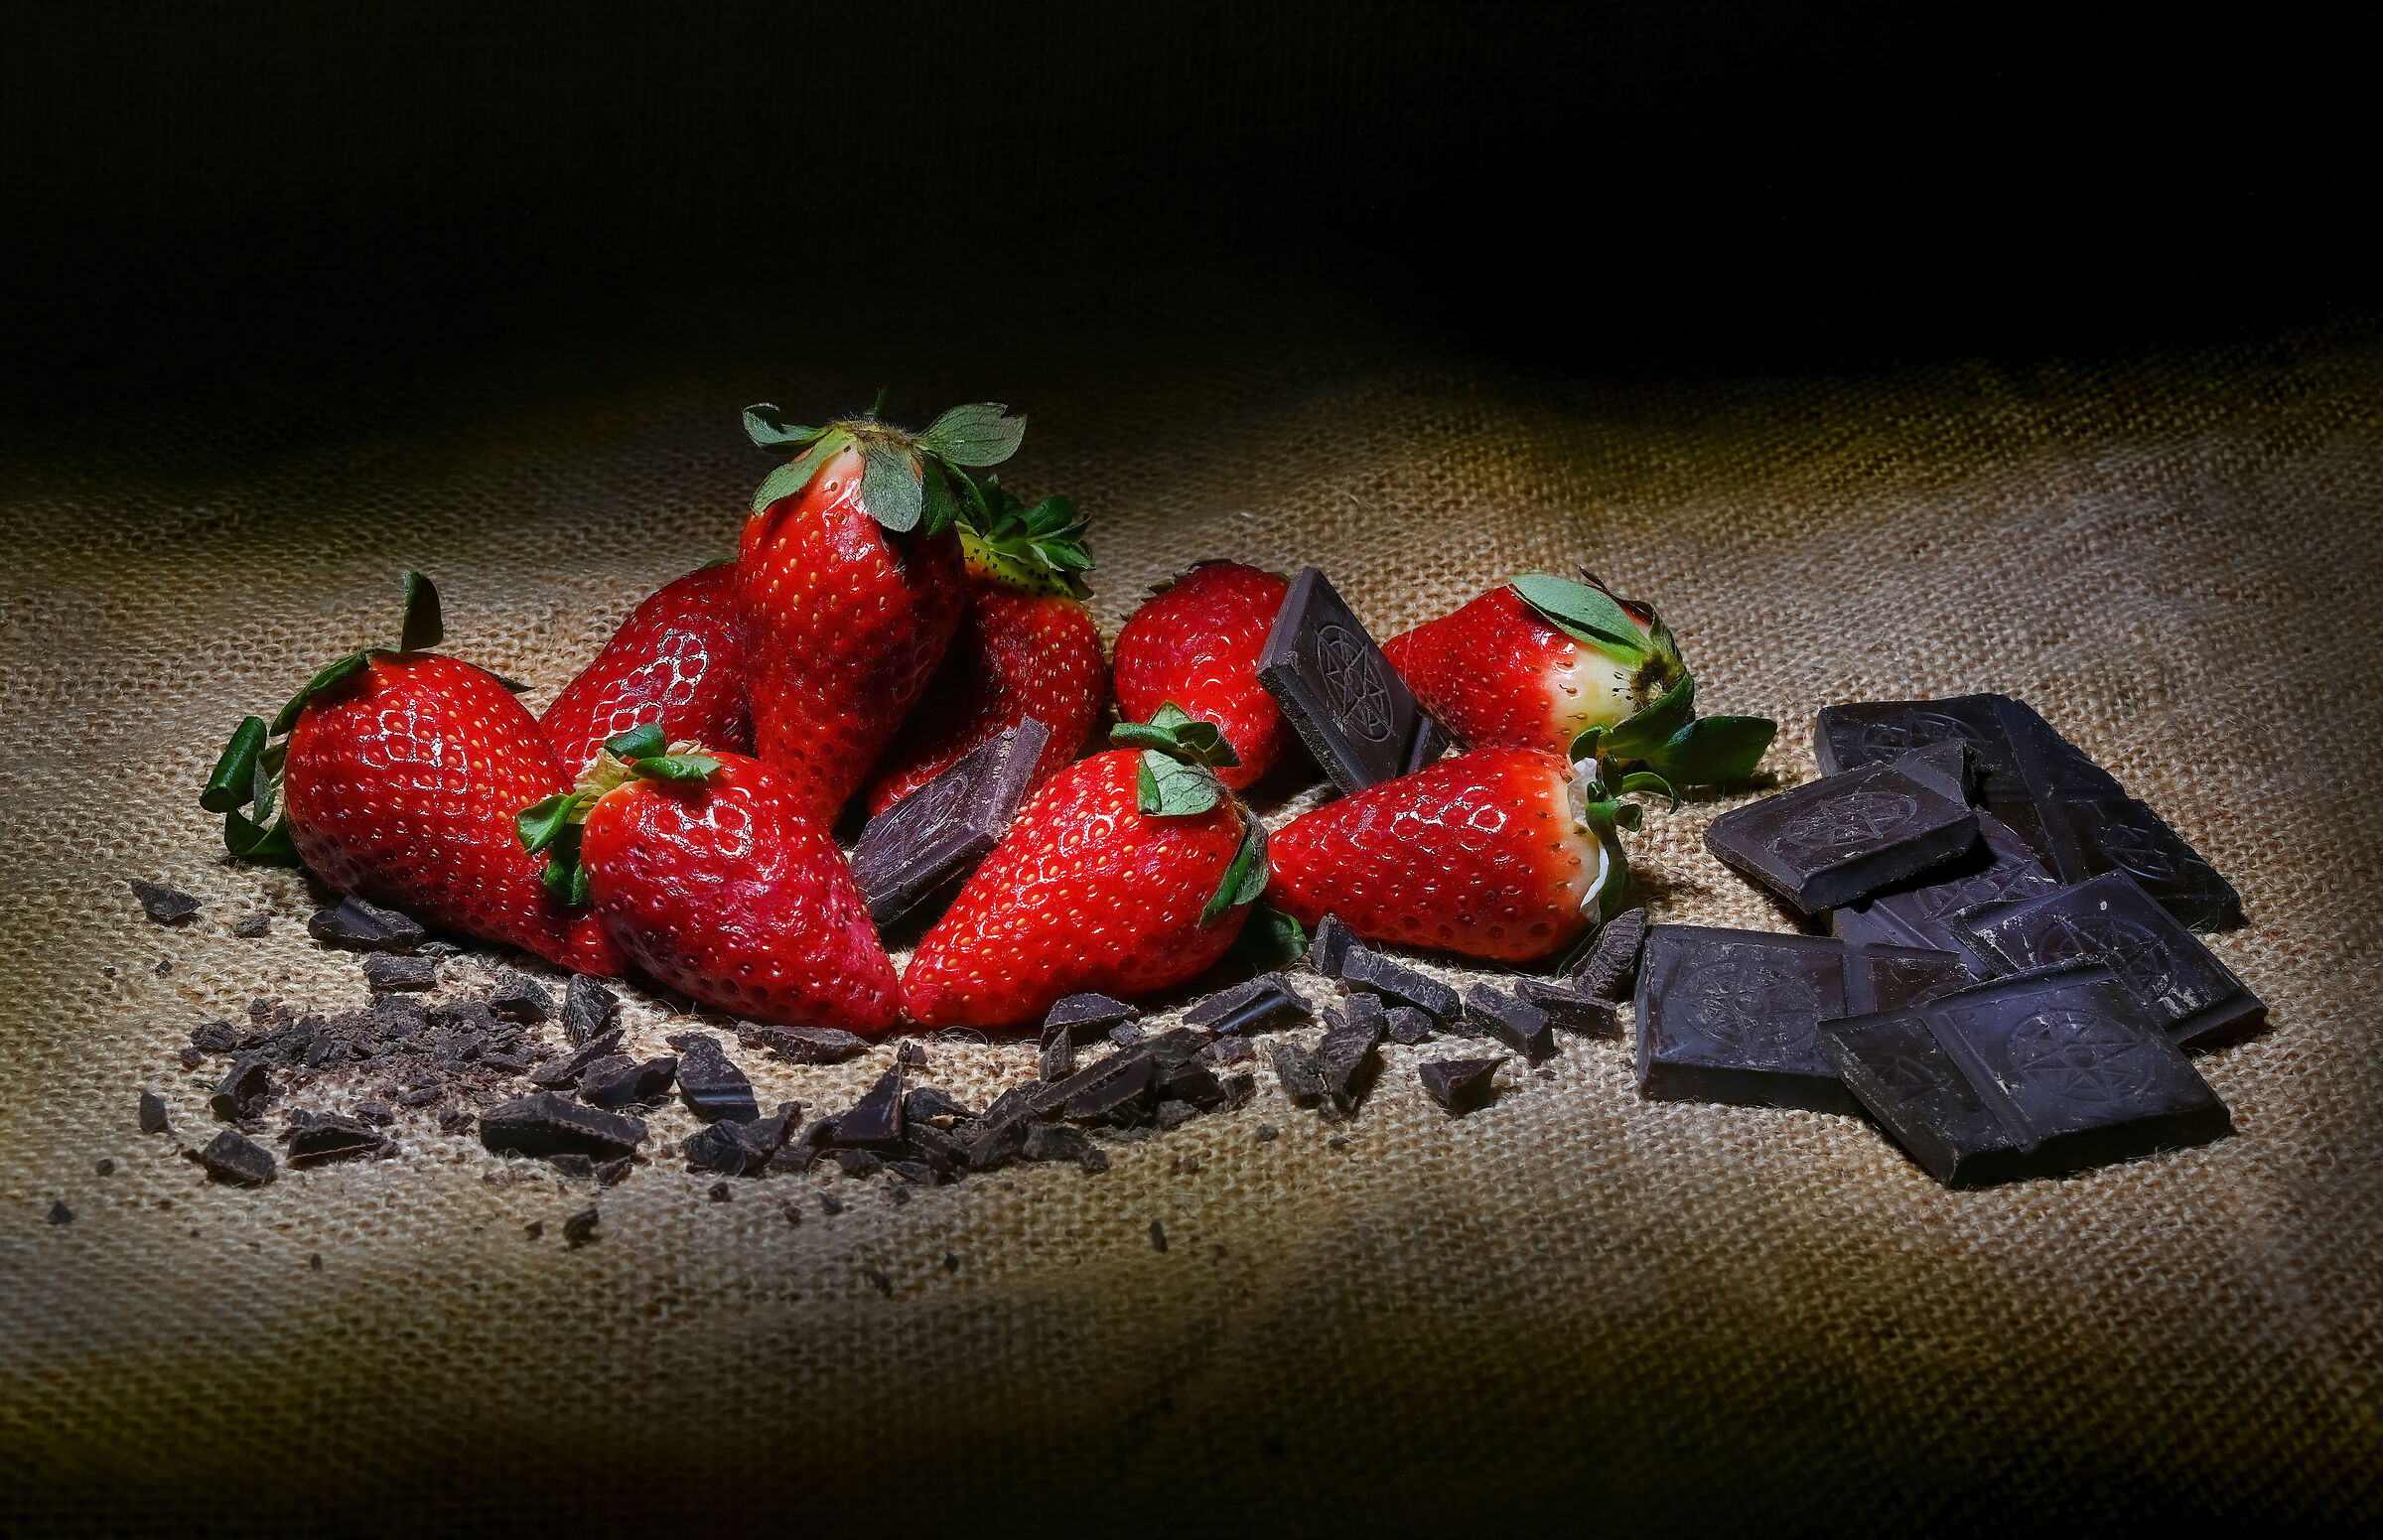 Strawberries and chocolate...